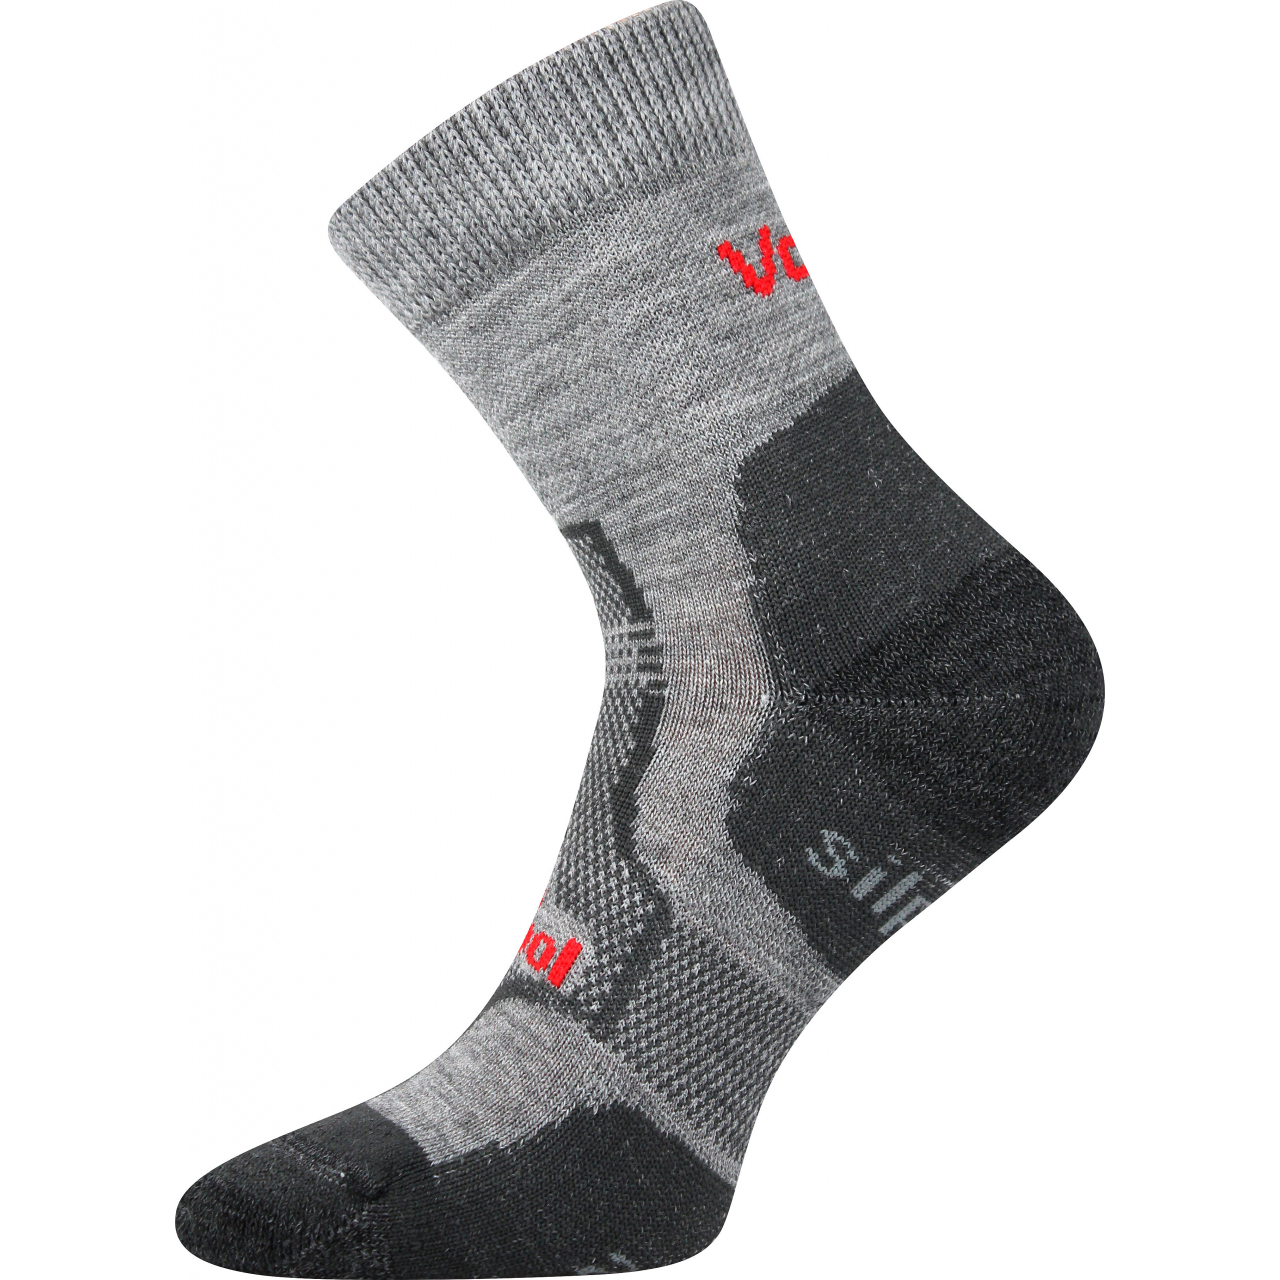 Ponožky unisex zimní Voxx Granit - světle šedé, 43-46